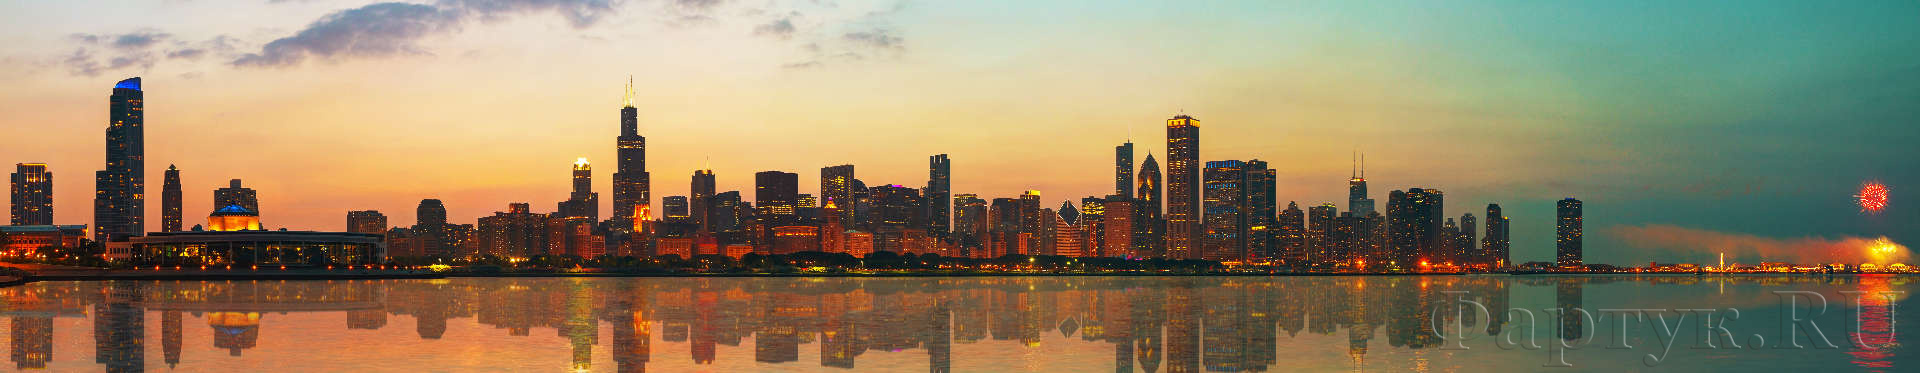 Центр города Чикаго, штат Иллинойс на закате